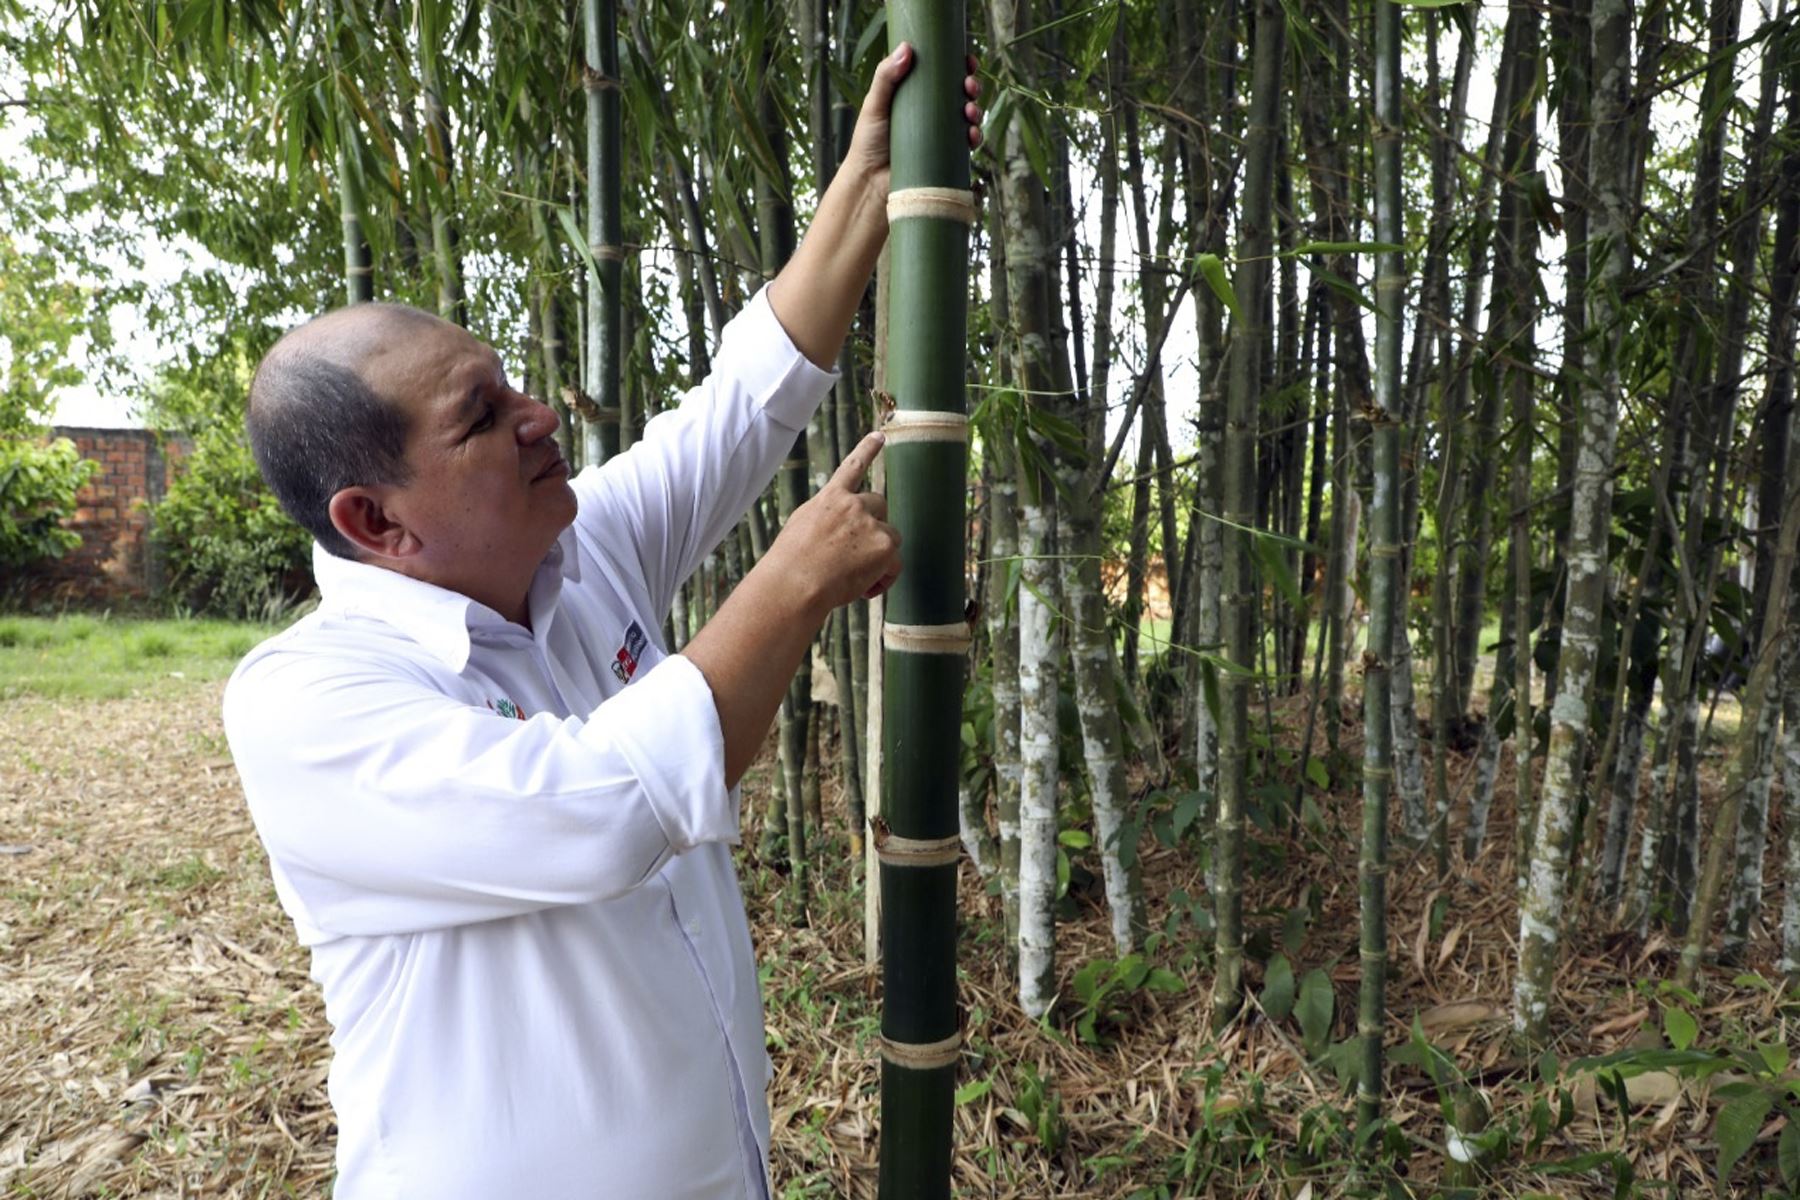 El bambú puede producir hasta 4 veces más oxígeno que otros árboles, estiman expertos. Foto: Concytec